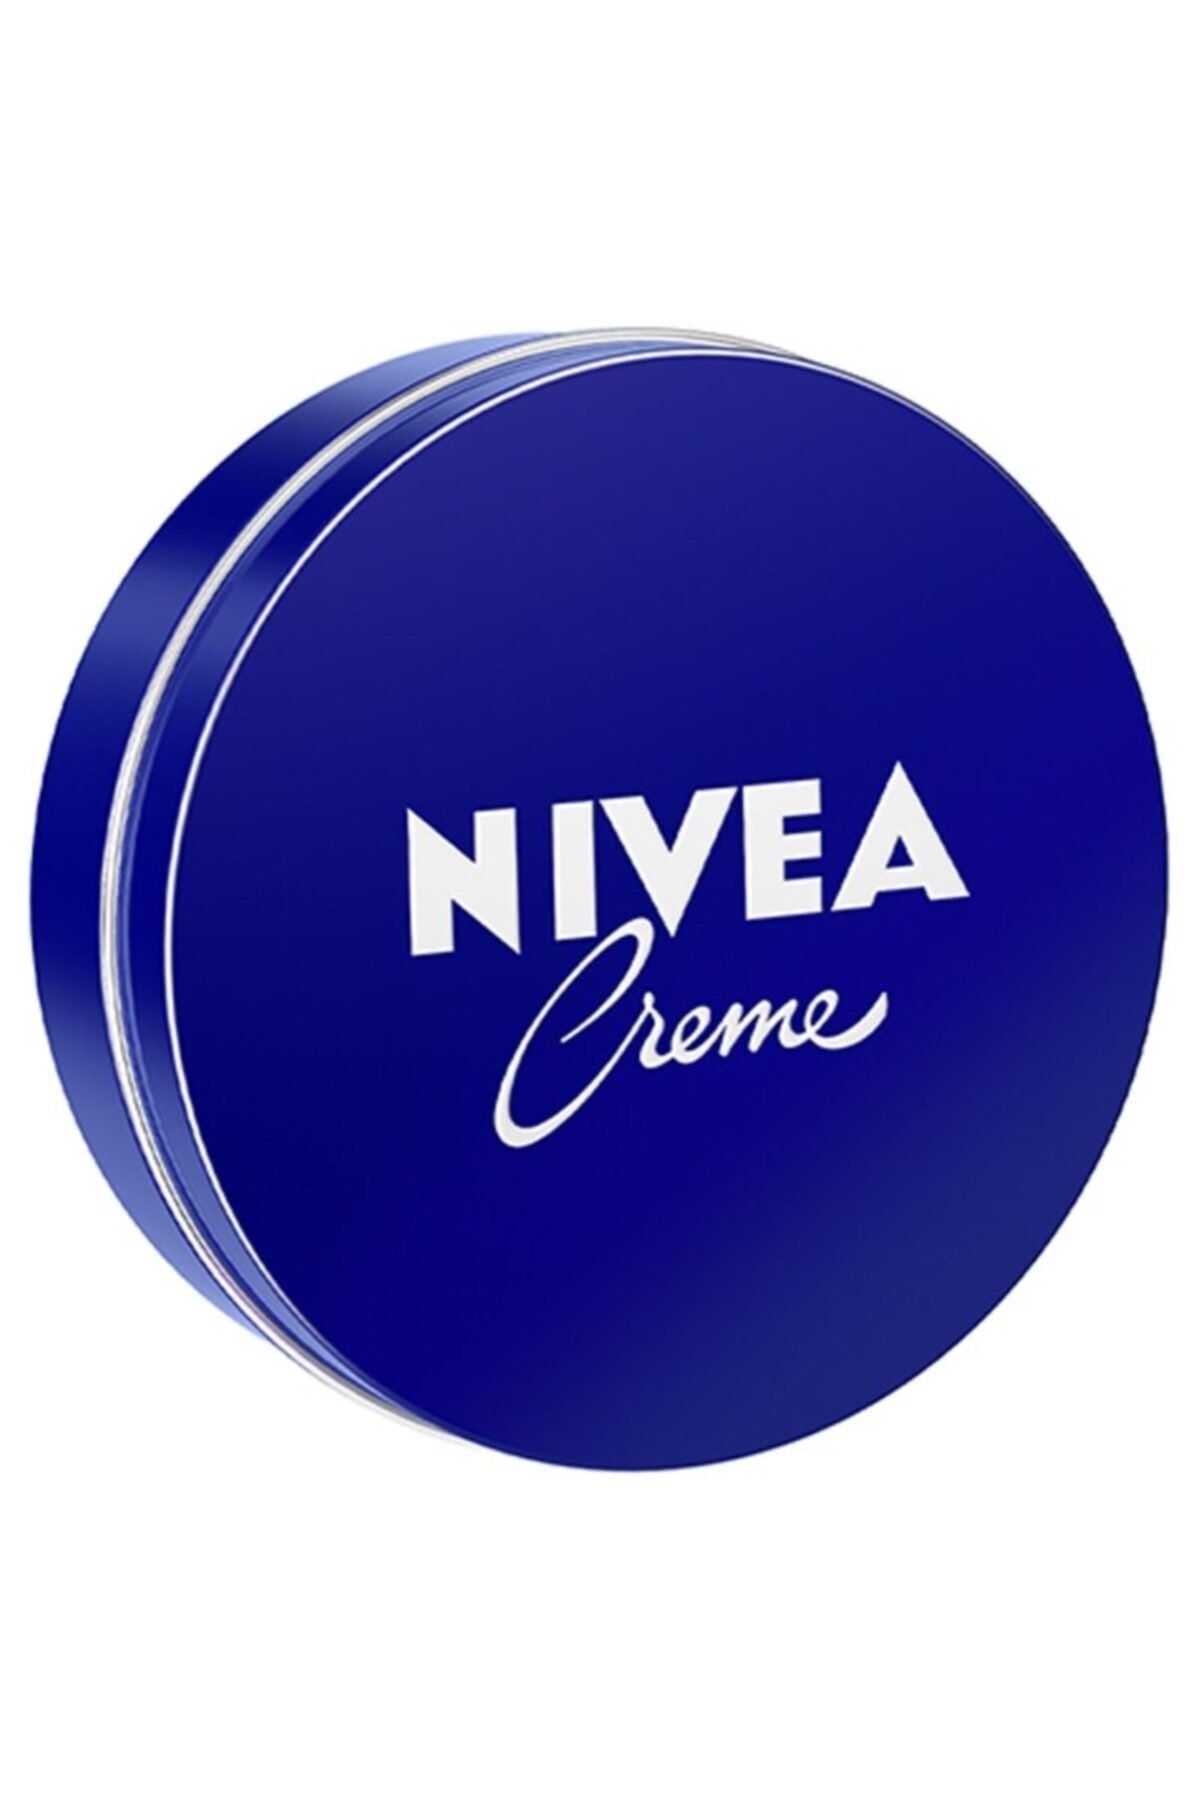 NIVEA Creme Krem 30 Ml